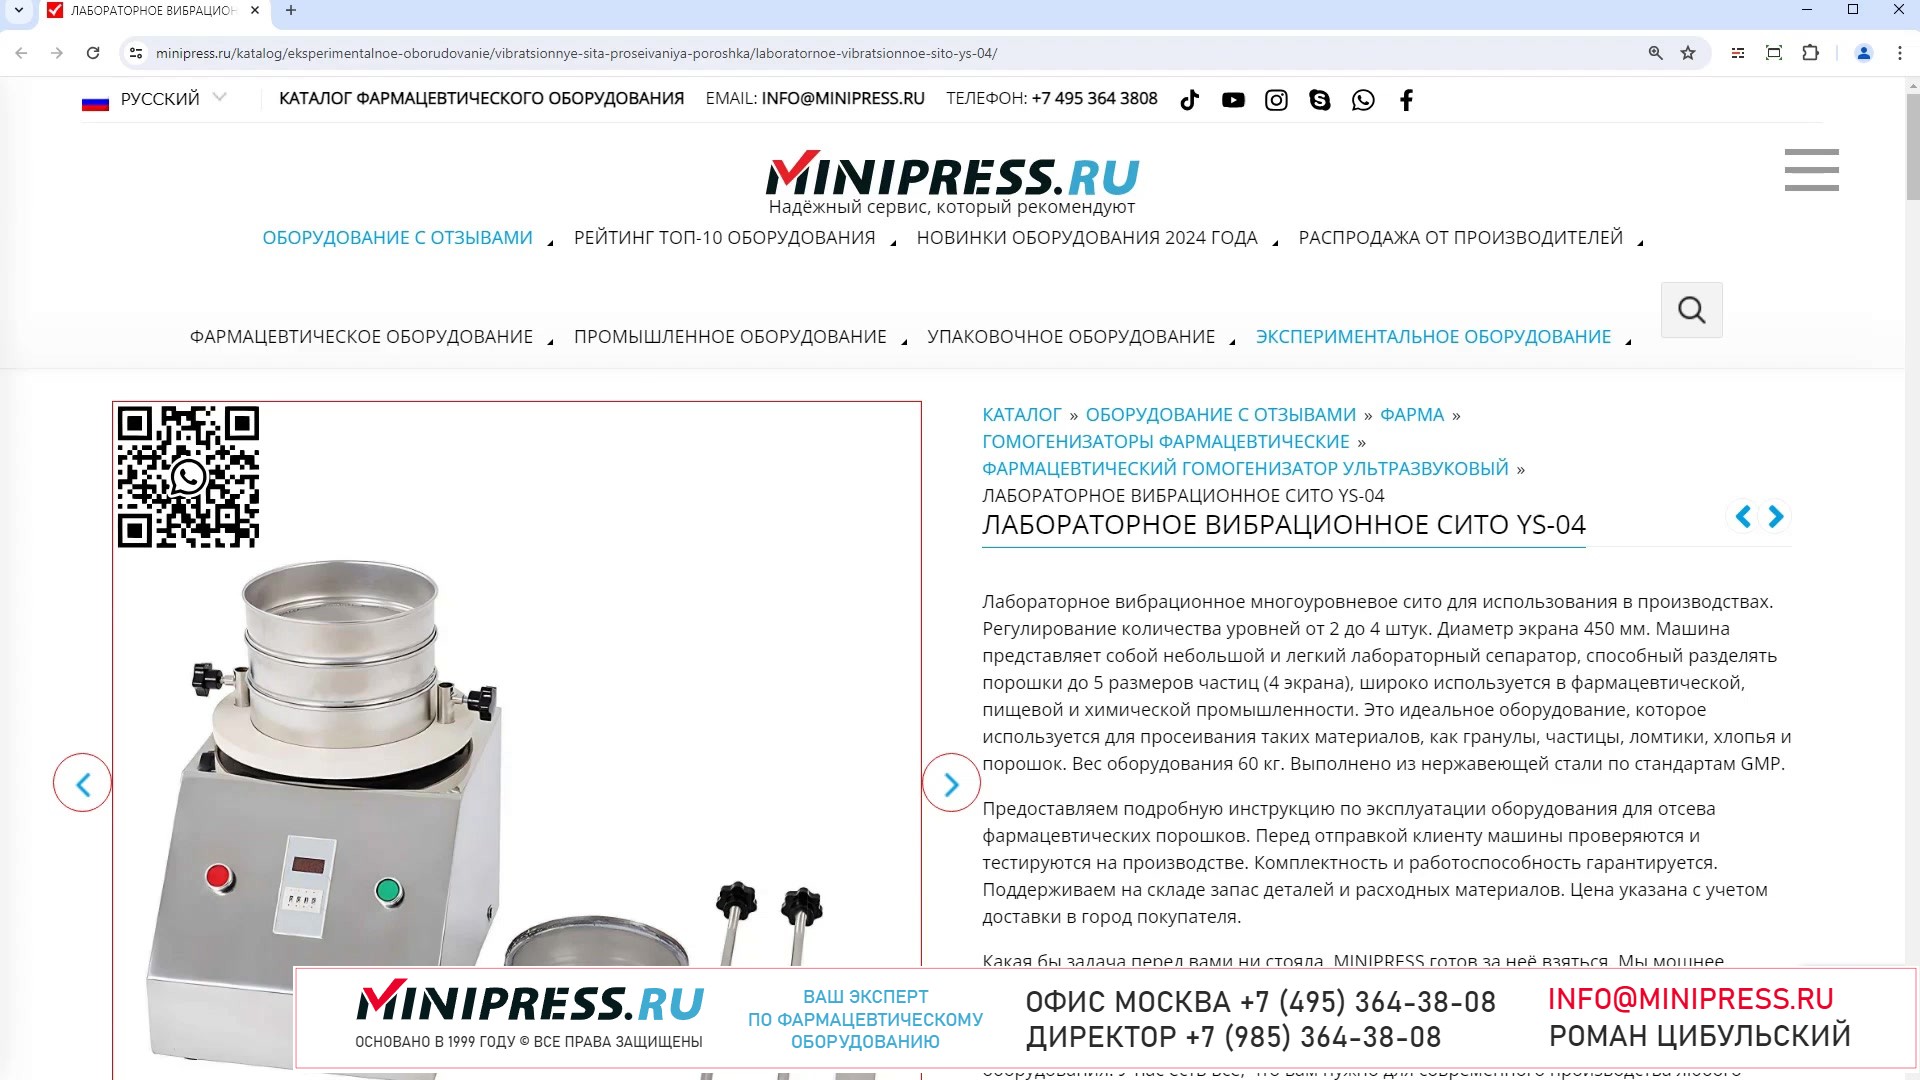 Minipress.ru Лабораторное вибрационное сито YS-04